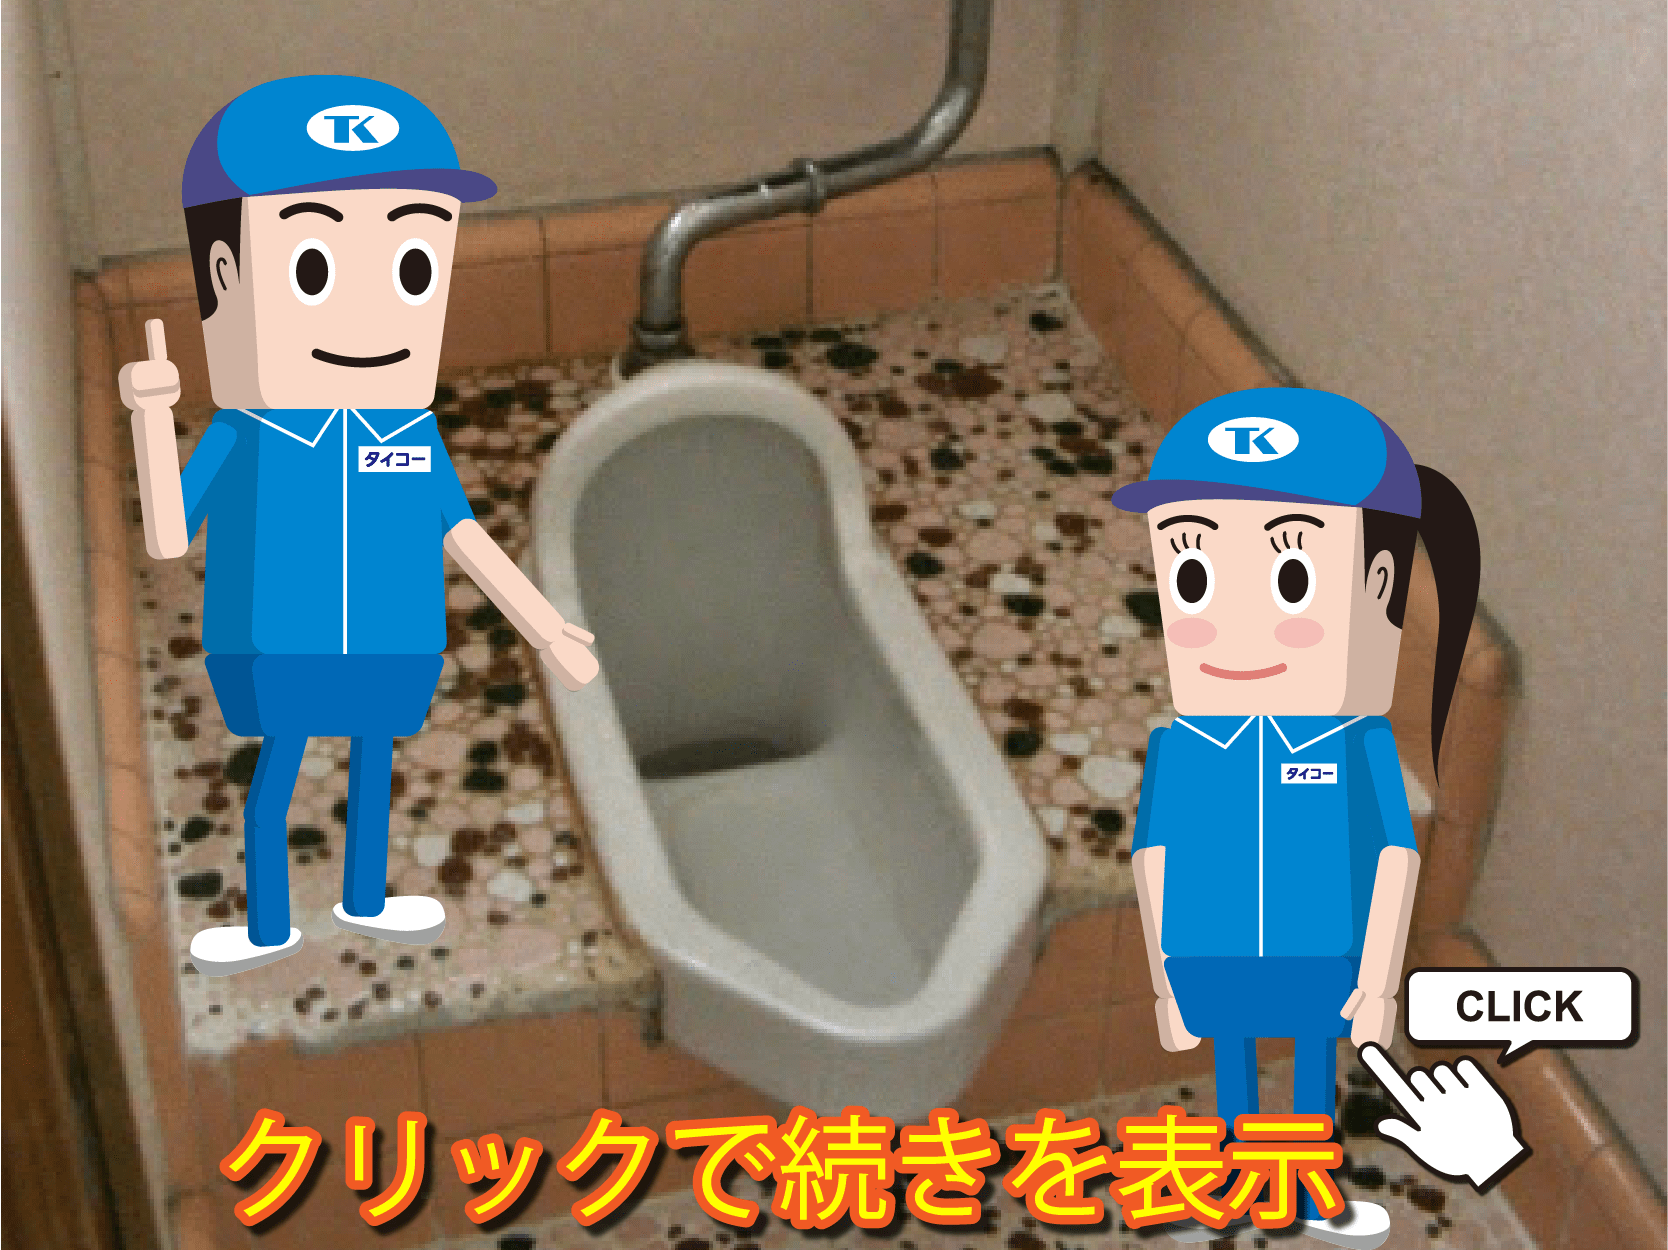 和式トイレは不要？～和式トイレの歴史・用途におけるメリットとデメリット・リフォームの注意点をご紹介～